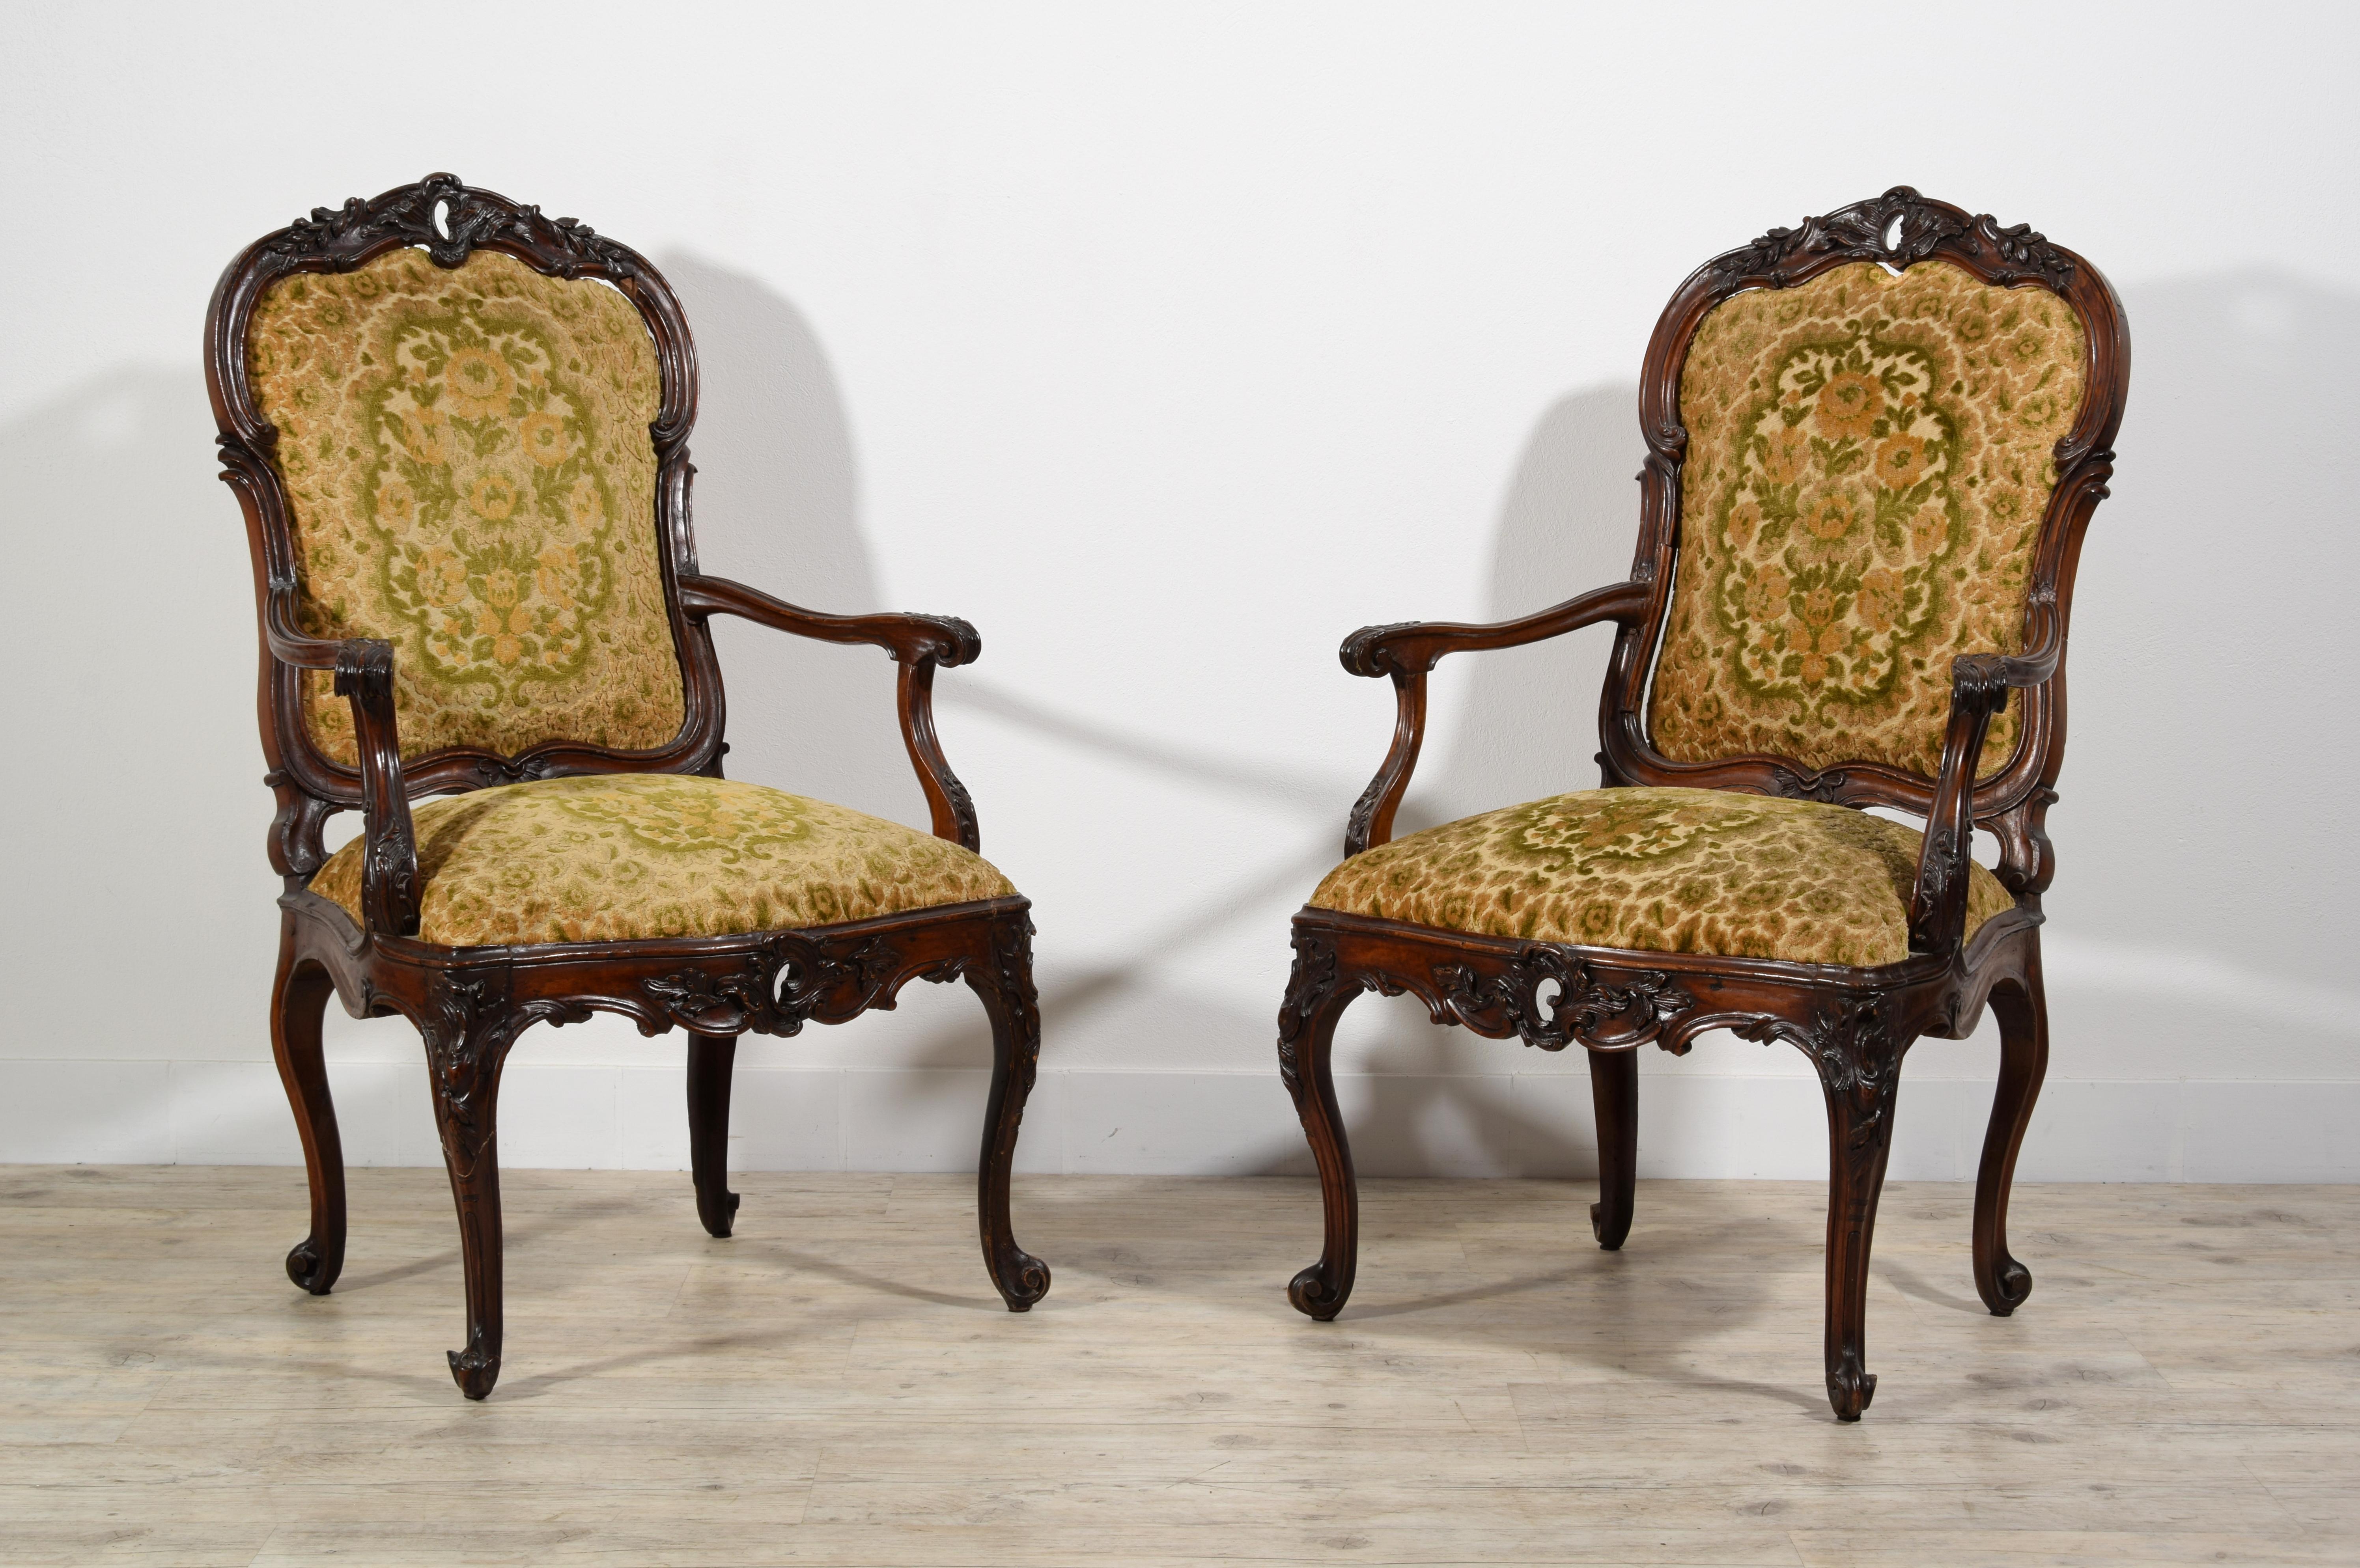 18. Jahrhundert, Paar italienische Holzsessel

Dieses schöne Sesselpaar wurde in der Lombardei, Itay, um die Mitte des achtzehnten Jahrhunderts hergestellt. Sie sind aus geschnitztem Nussbaumholz und haben eine gemischte und gewellte Anlage, die